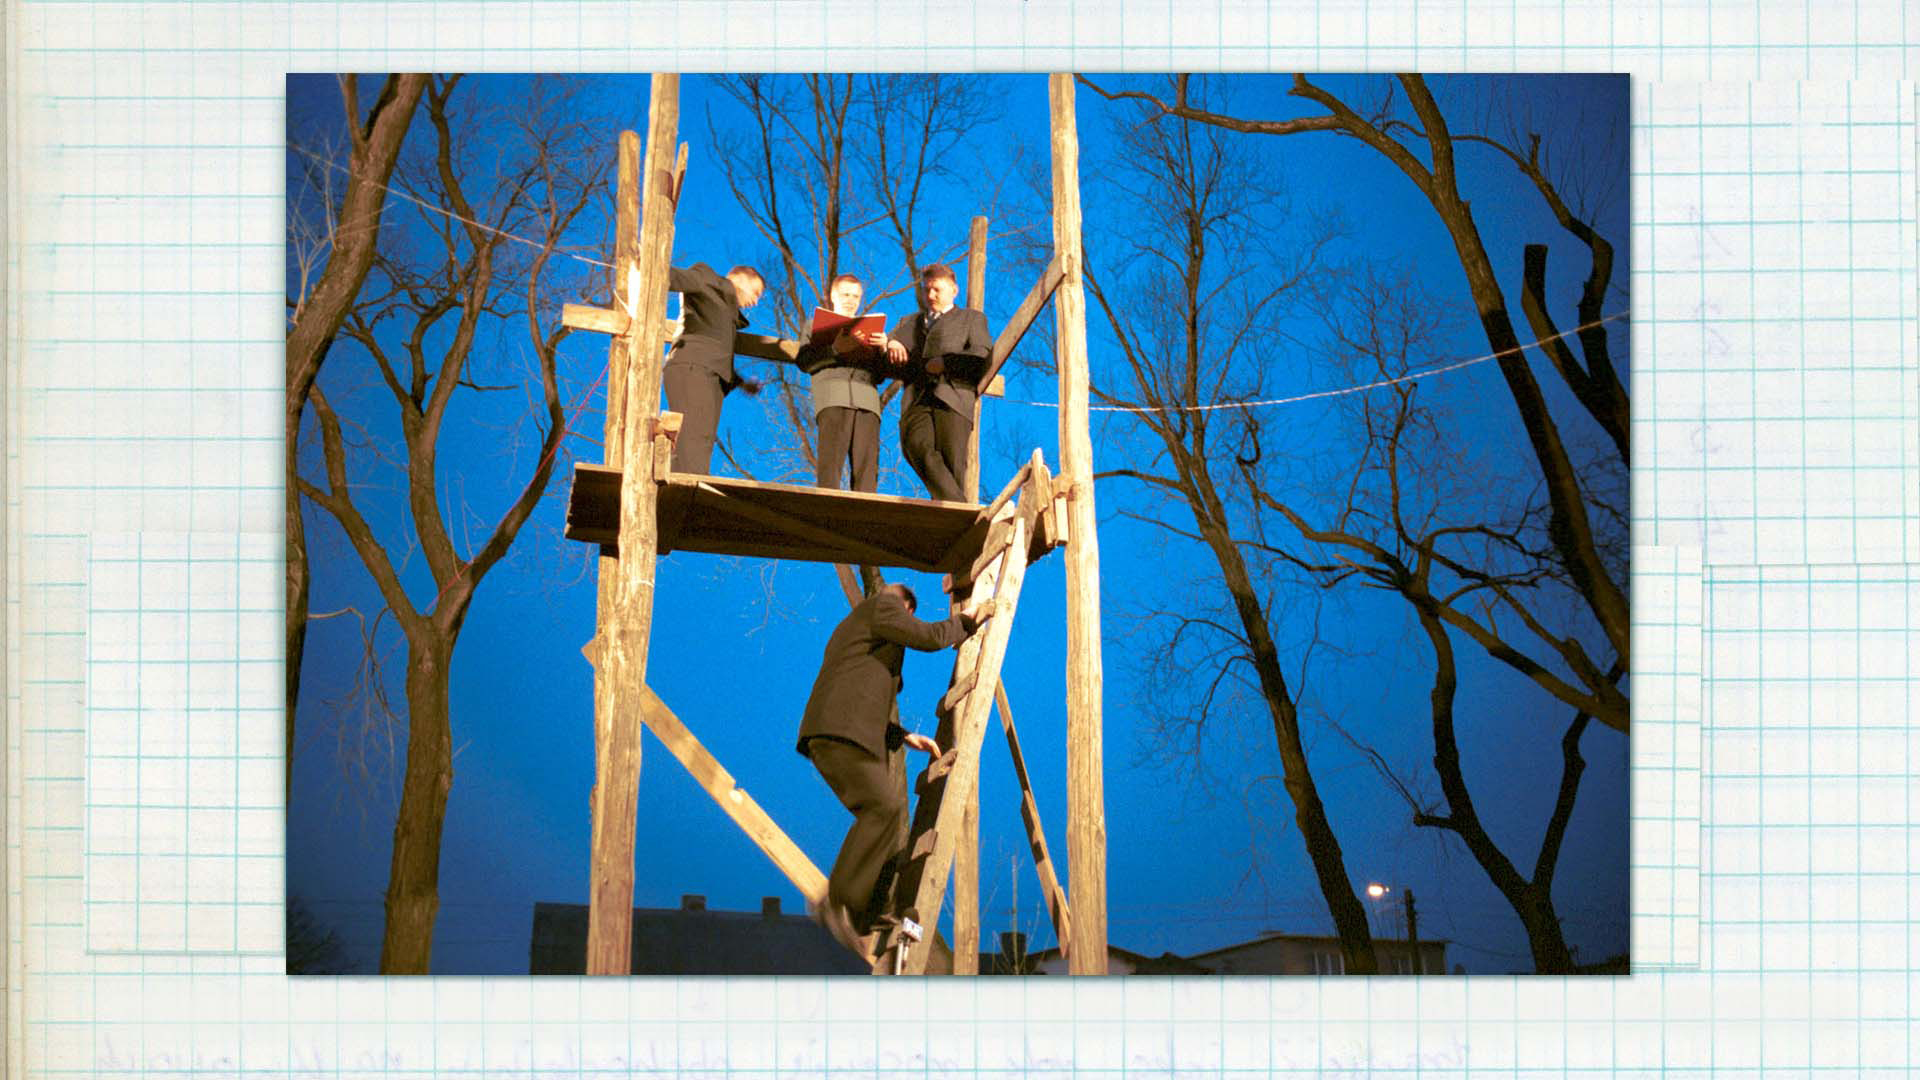 Wygłaszanie przywołówek, Niedziela Wielkanocna, 2004, fot. Damian Kramski Zdjęcie w kolorze. Po drewnianej drabinie wchodzi na trybunę wchodzi odświętnie ubrany mężczyzna. Na górze stoi trzech mężczyzn, także odzianych odświętnie. Jeden z nich w dłoniach trzyma czerwoną księgę.